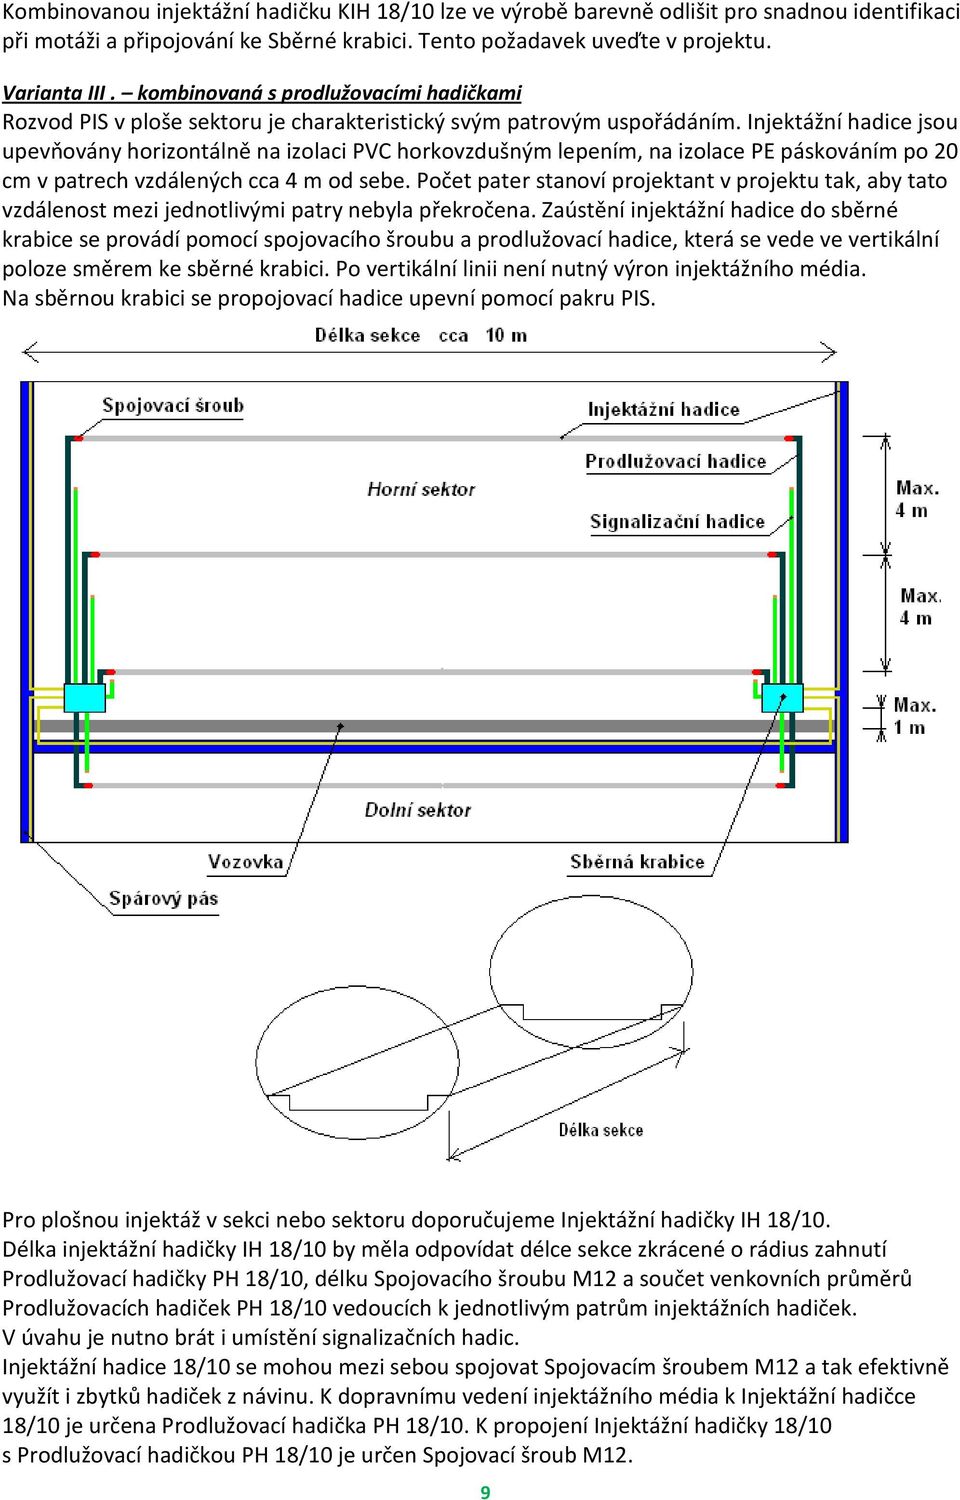 Injektážní hadice jsou upevňovány horizontálně na izolaci PVC horkovzdušným lepením, na izolace PE páskováním po 20 cm v patrech vzdálených cca 4 m od sebe.